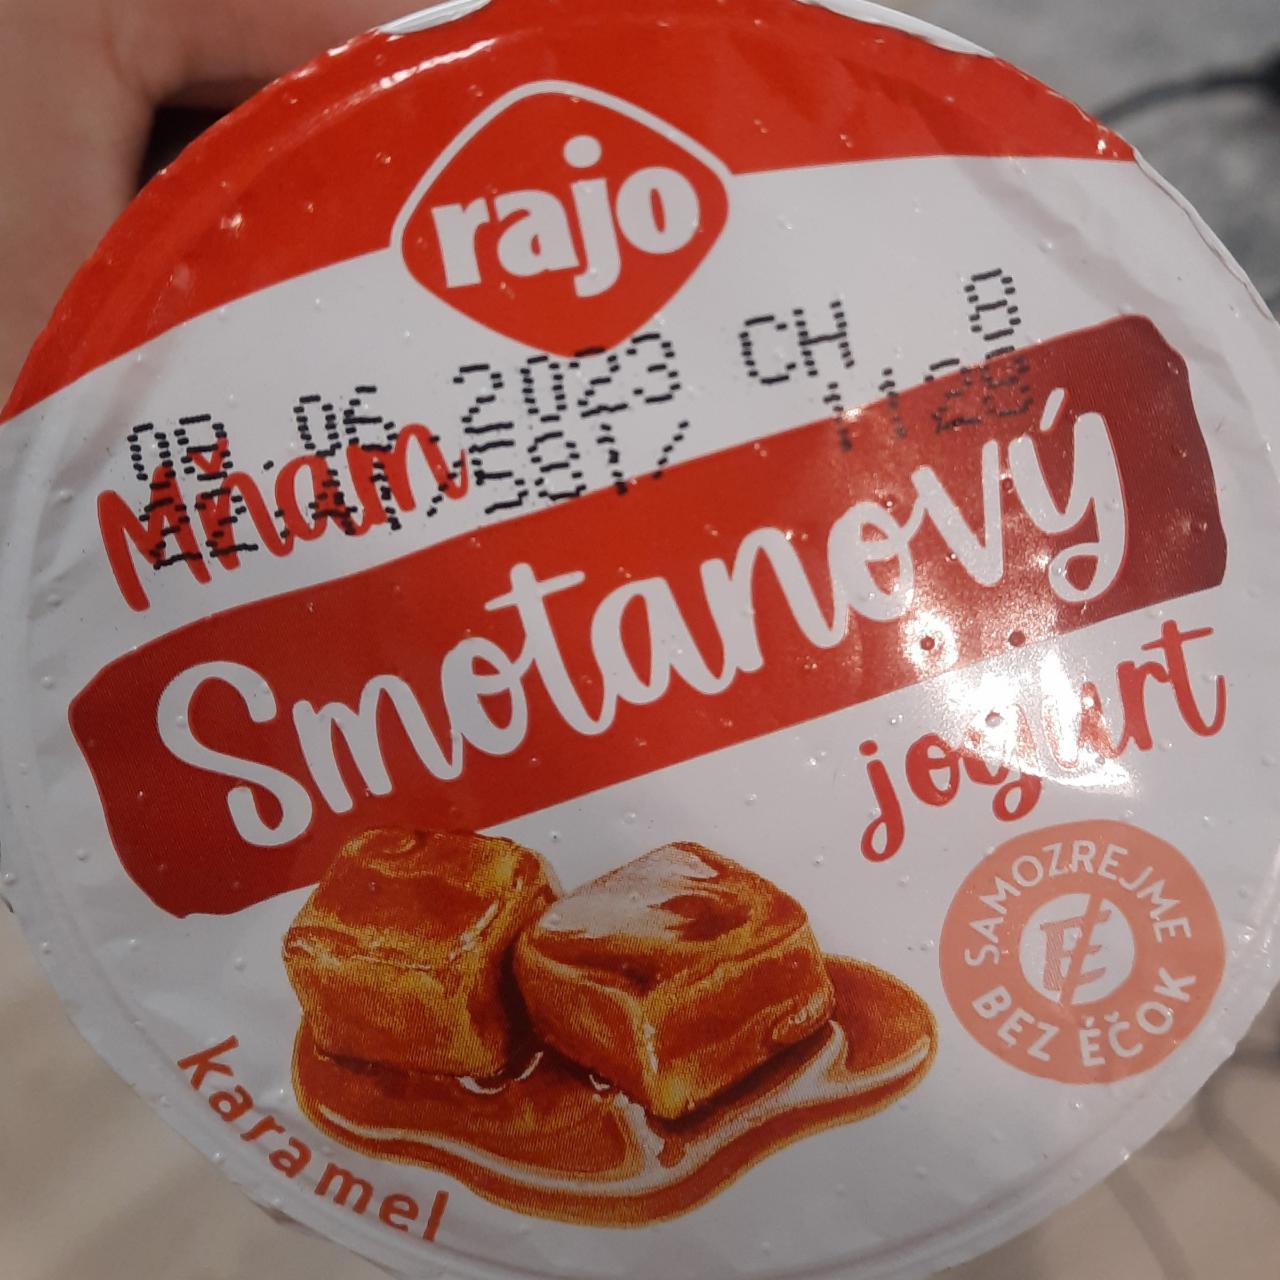 Fotografie - Mňam DUO smotanový jogurt karamelový 10% Rajo